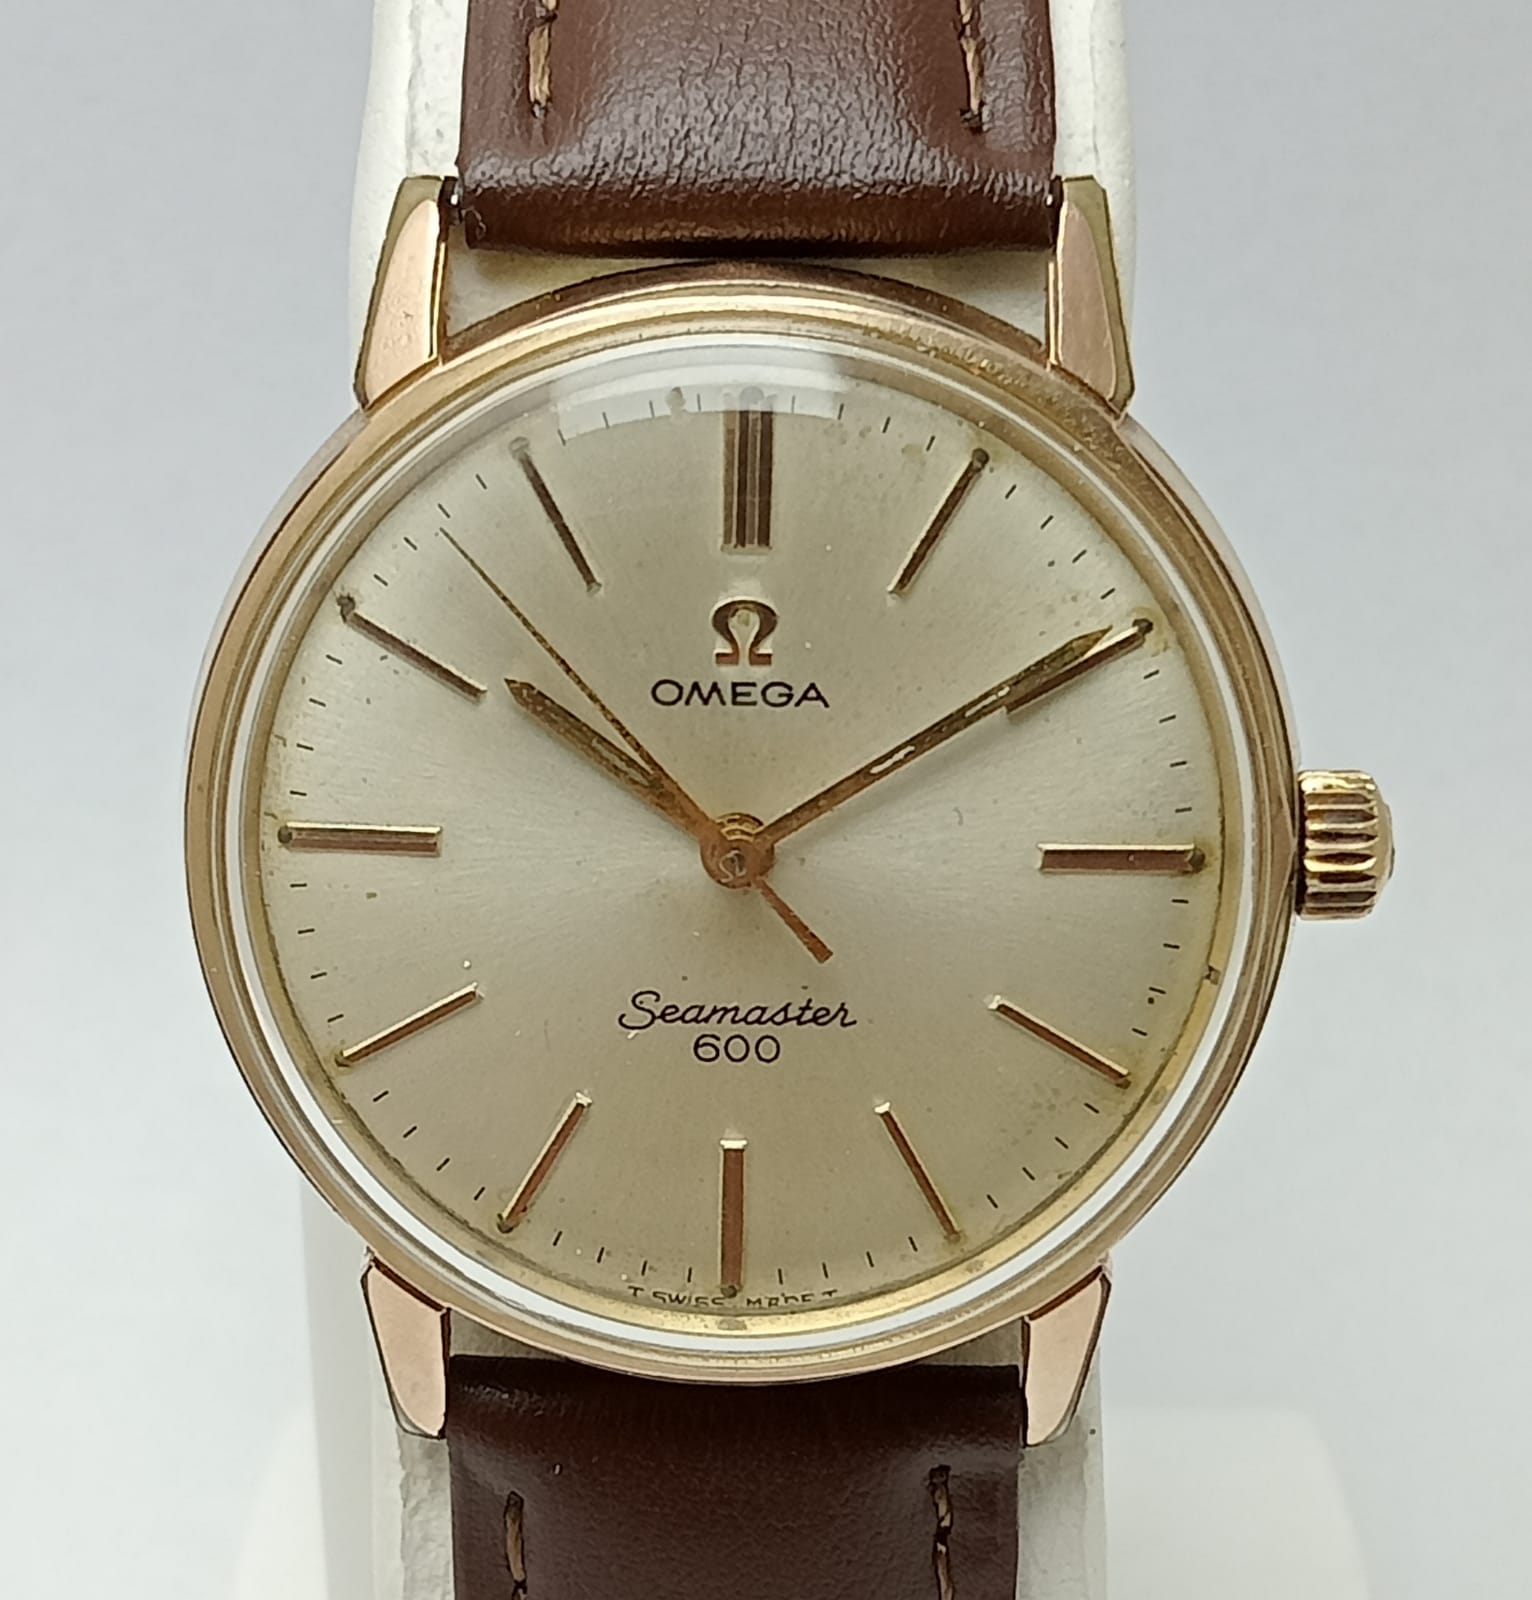 Omega Seamaster 600 Manual Winding Vintage Men’s Watch